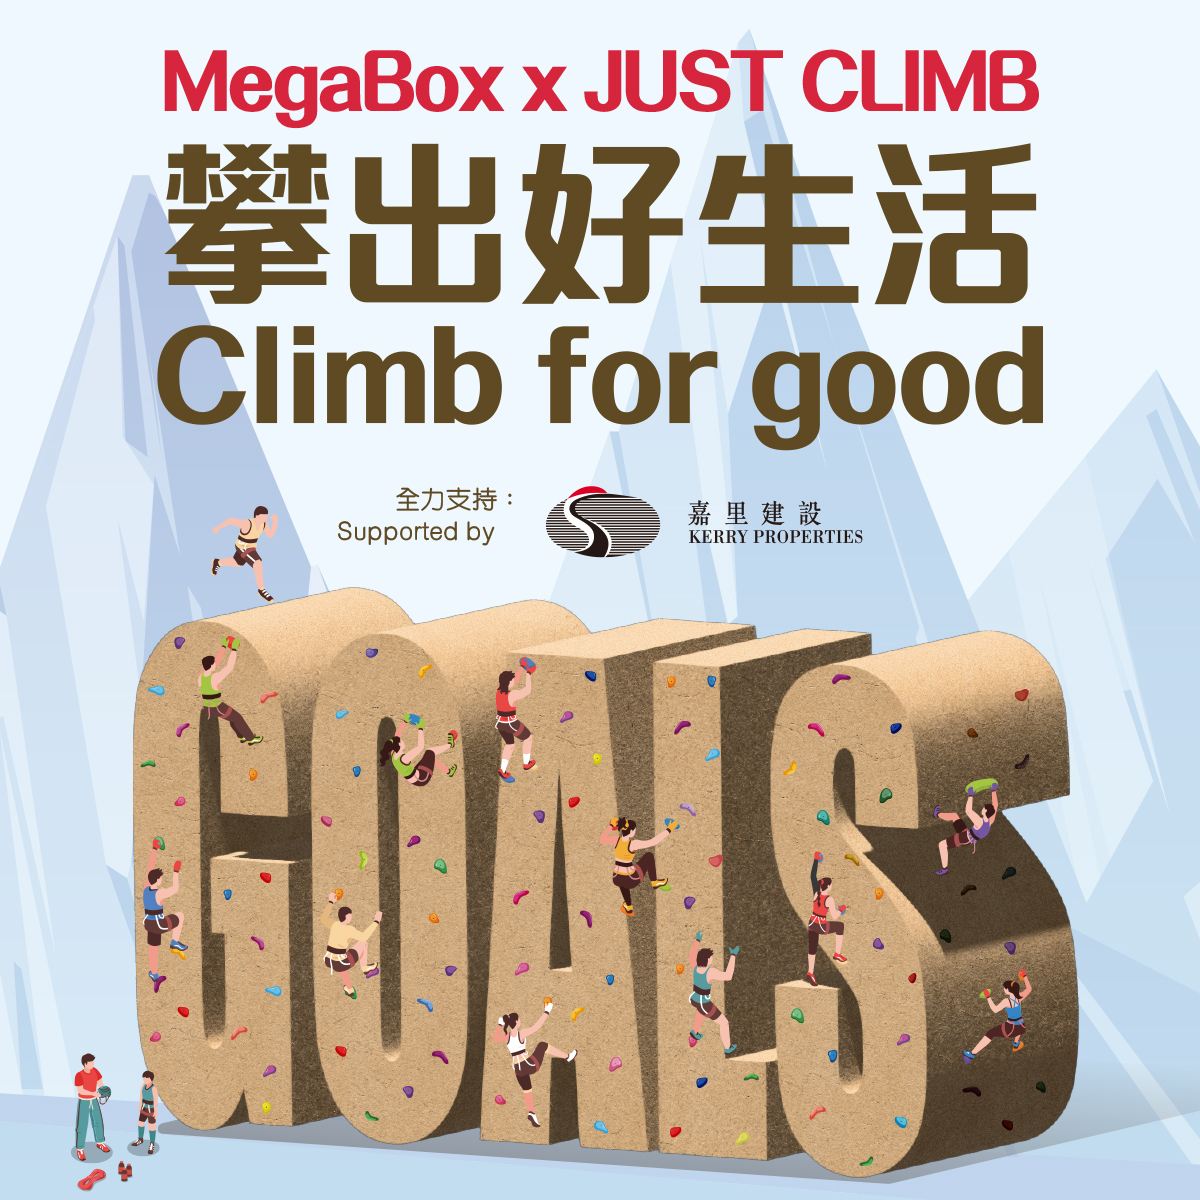 MegaBox x JUST CLIMB